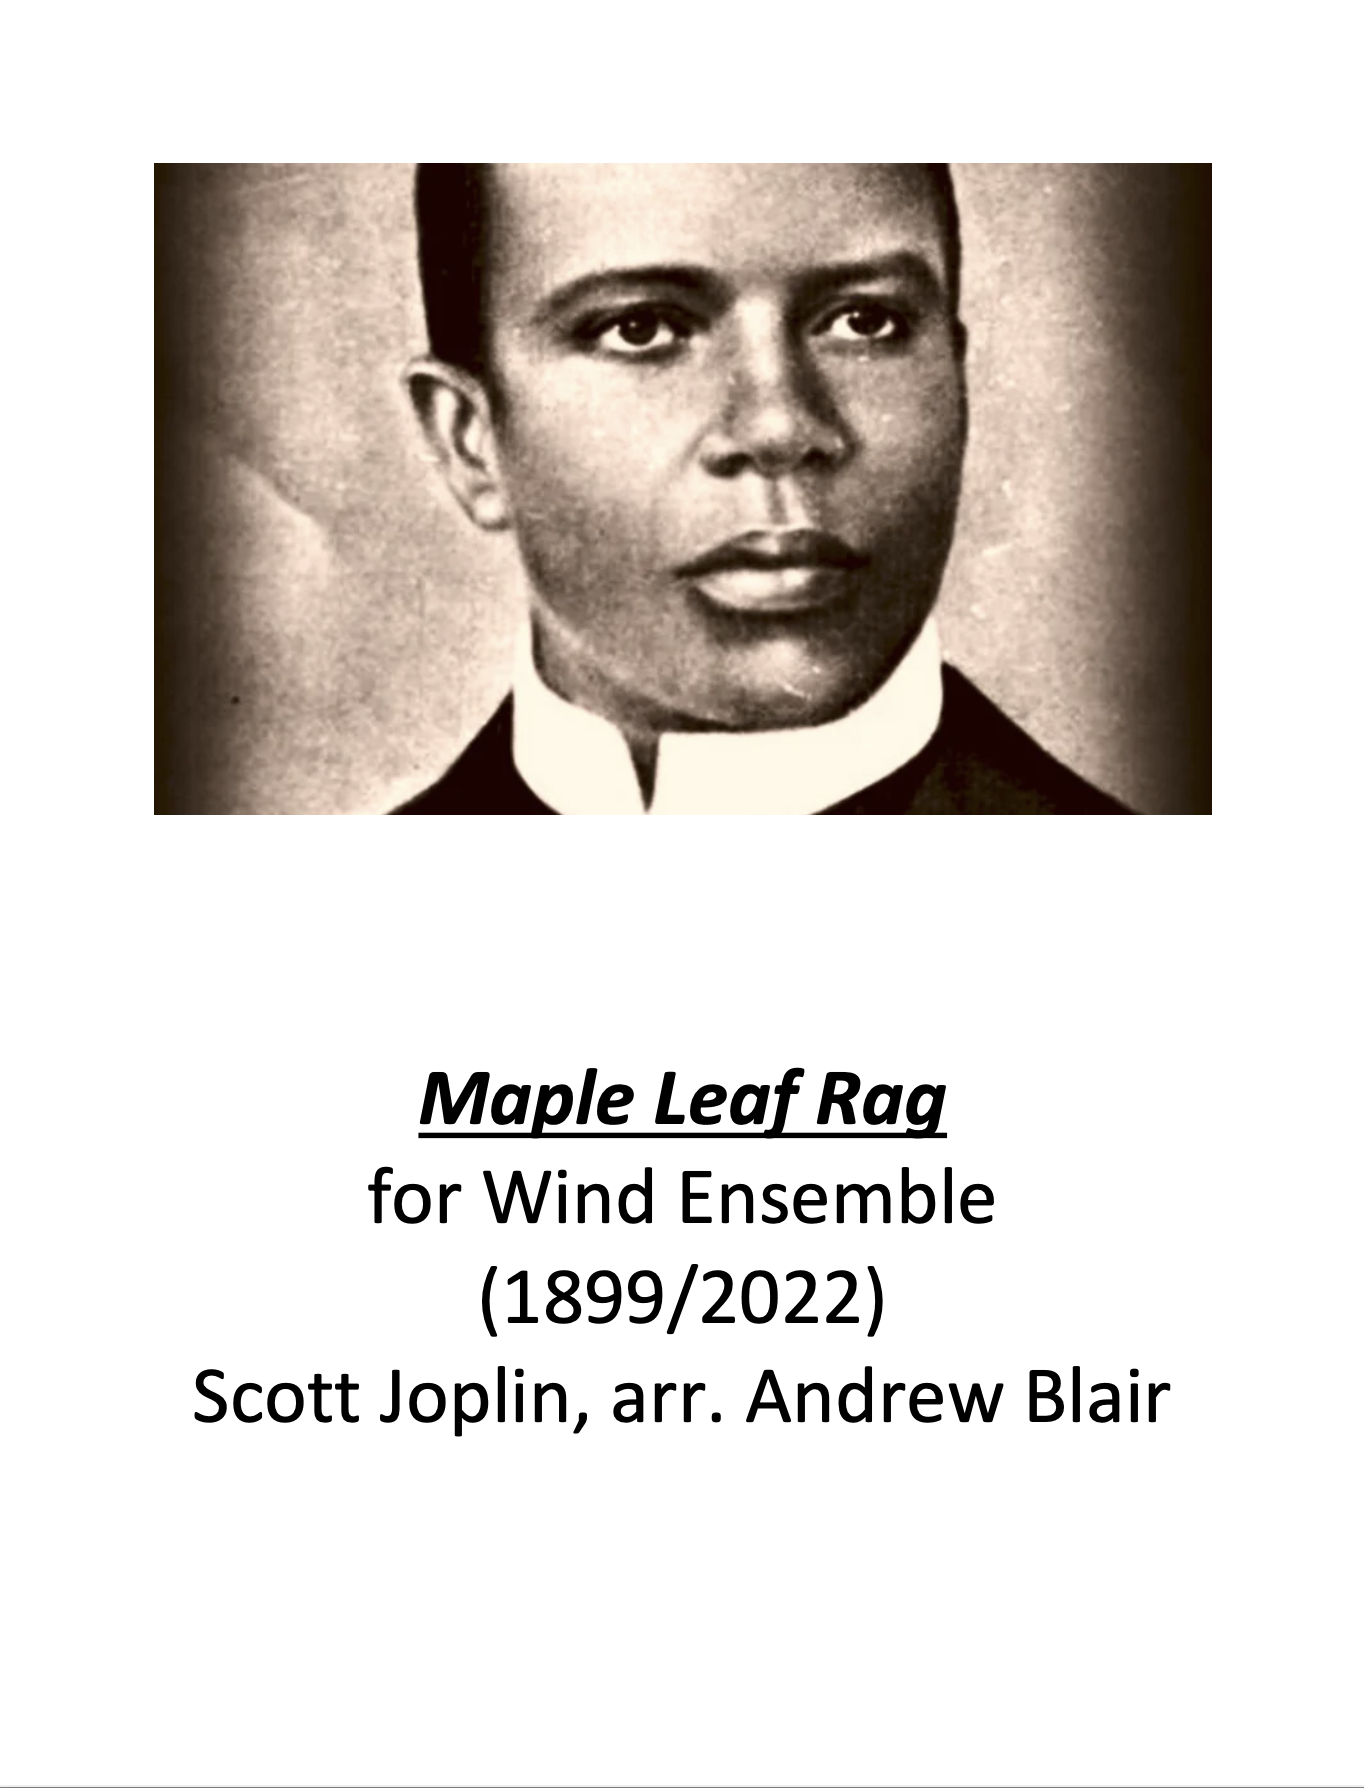 Maple Leaf Rag (Score Only) by Joplin, arr. Andrew Blair